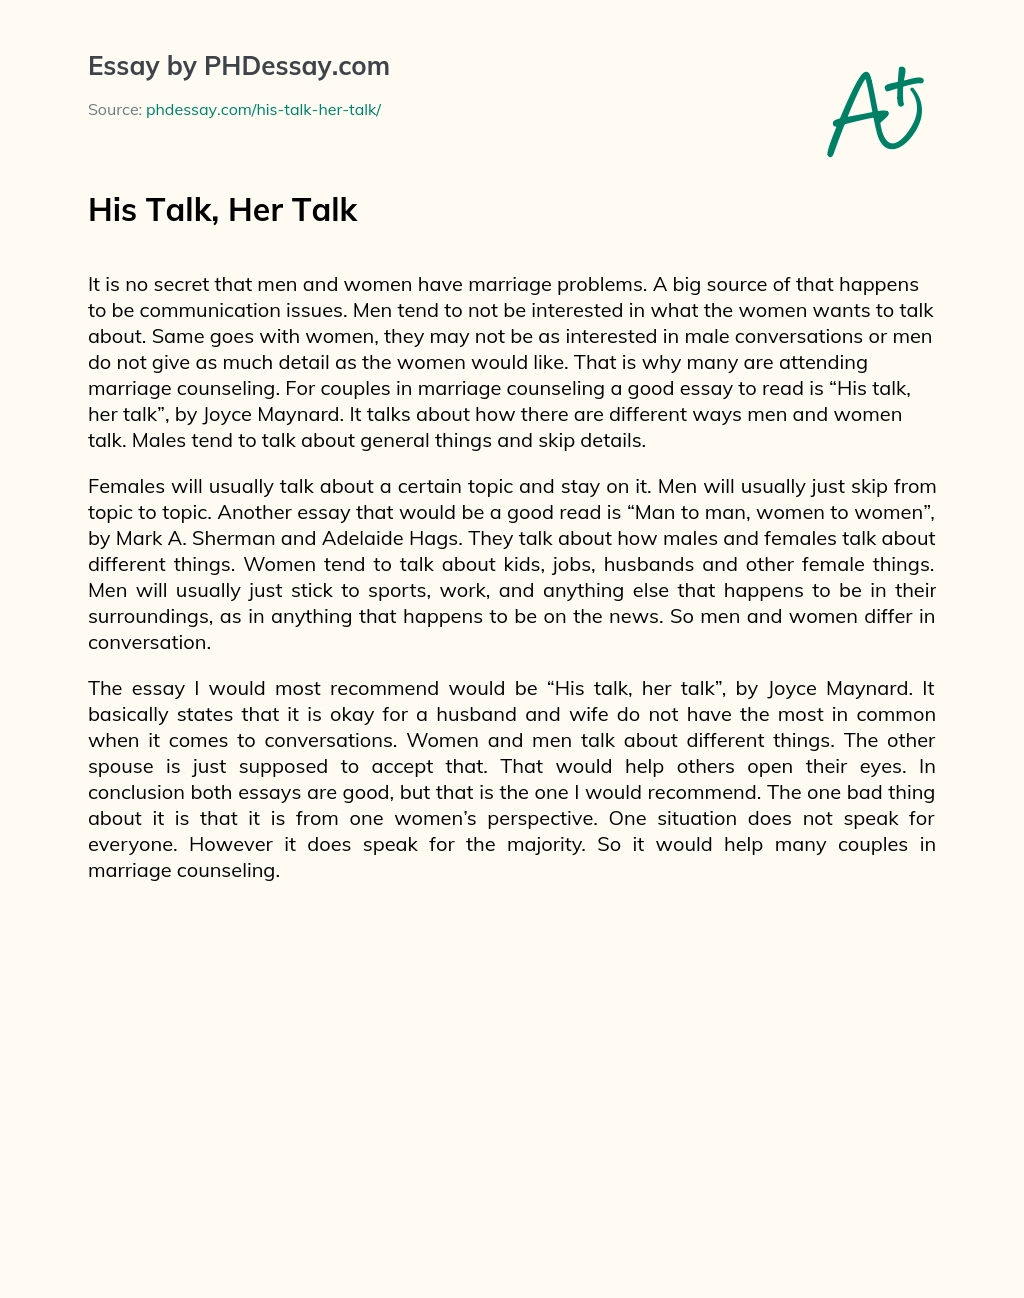 His Talk, Her Talk essay